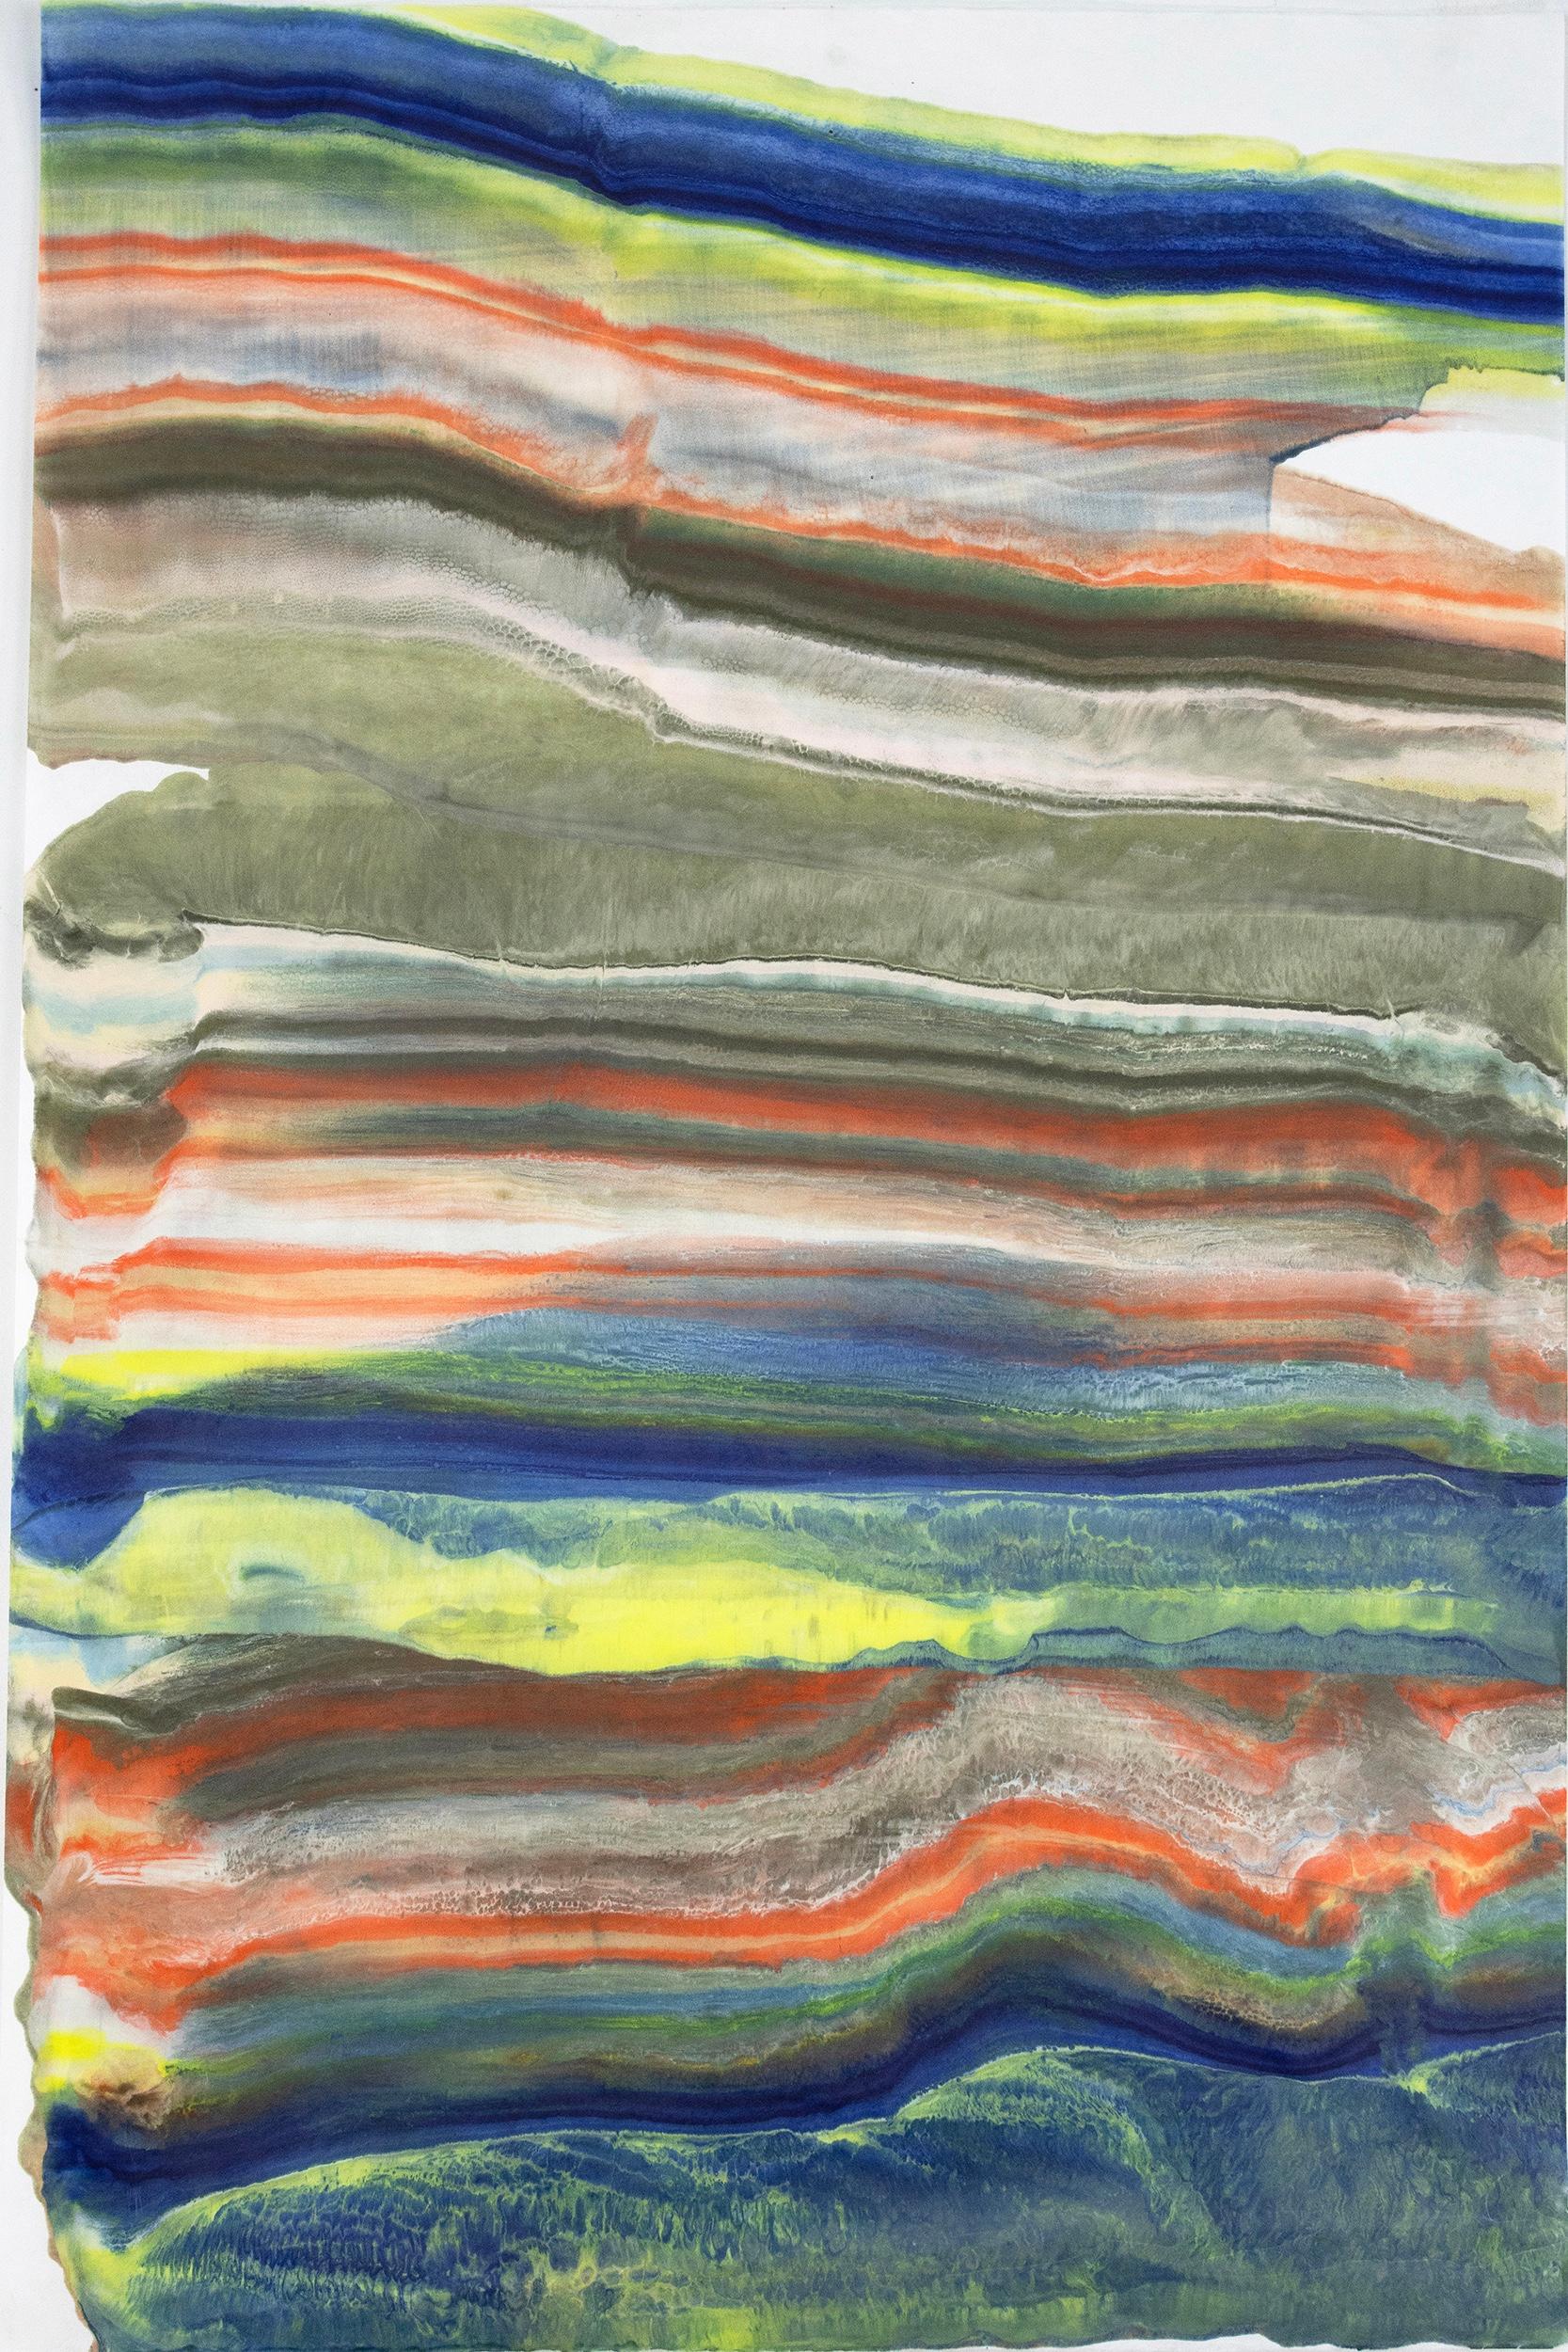 Abstract Print Laura Moriarty - Parler aux rochers 27, bleu marine, orange, jaune citron, Brown Monotype à l'encaustique